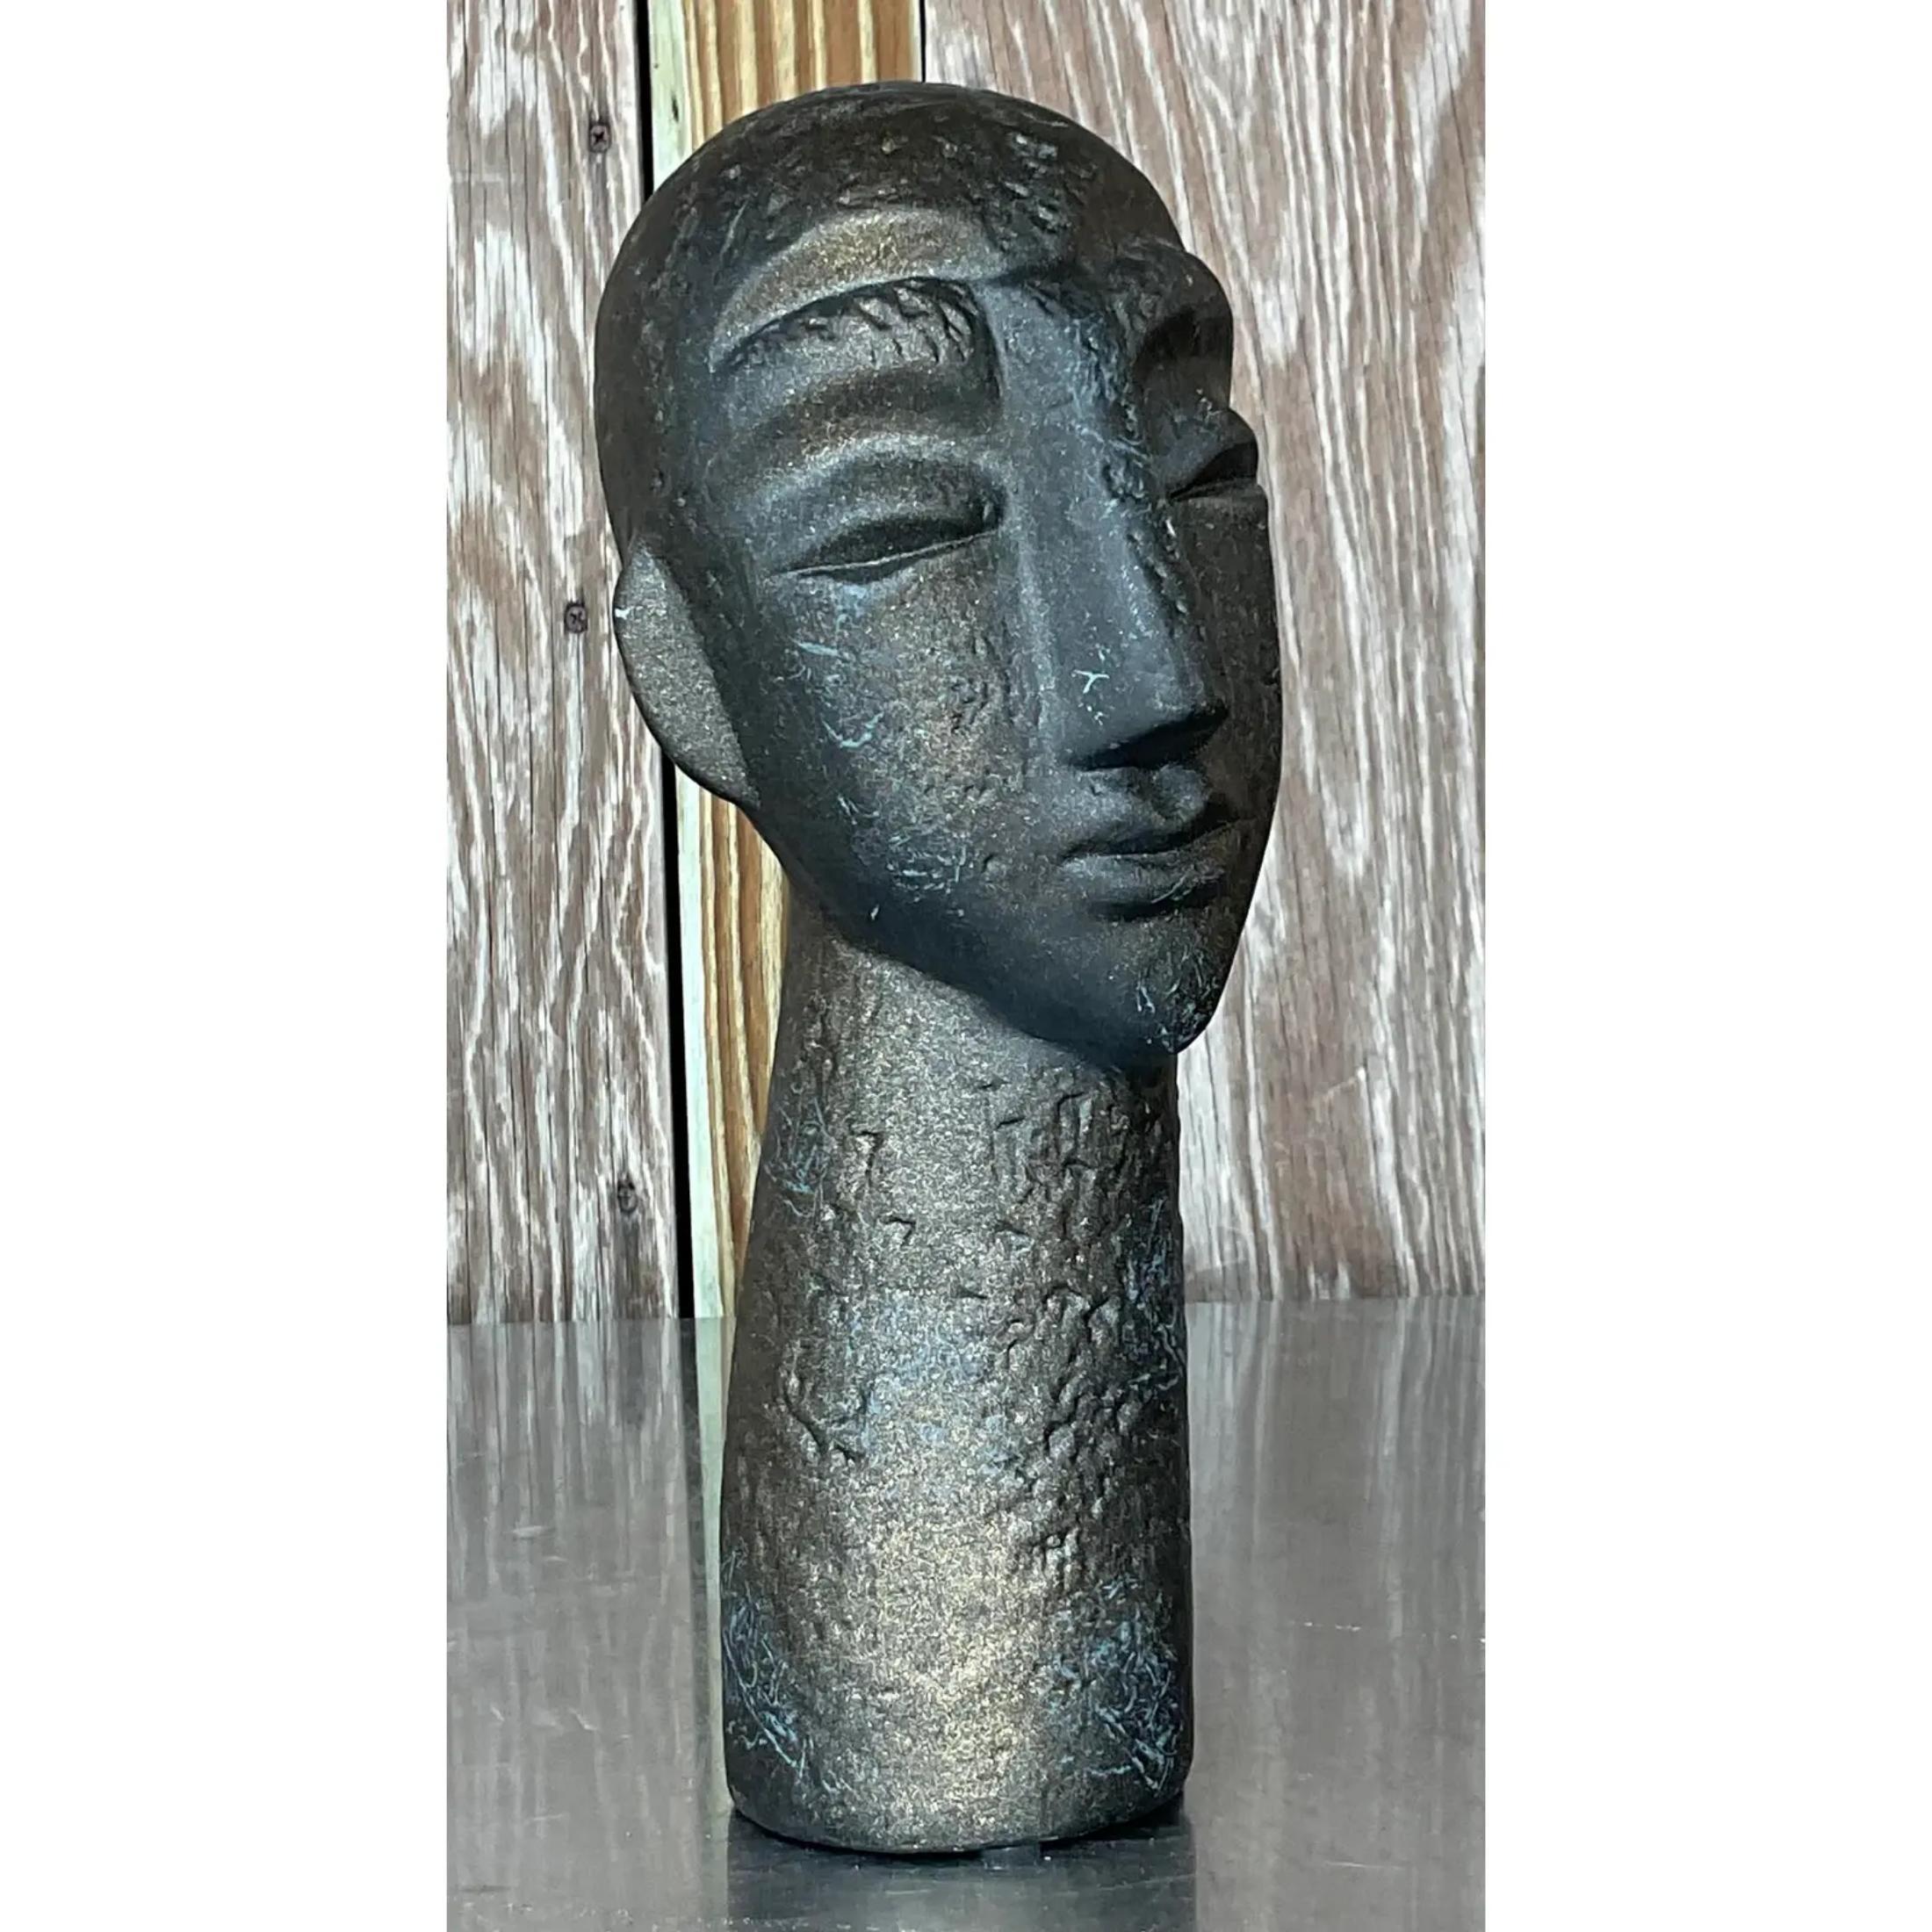 Un fabuleux buste vintage Boho Abstract. Une finition mate chic avec de beaux détails de texture